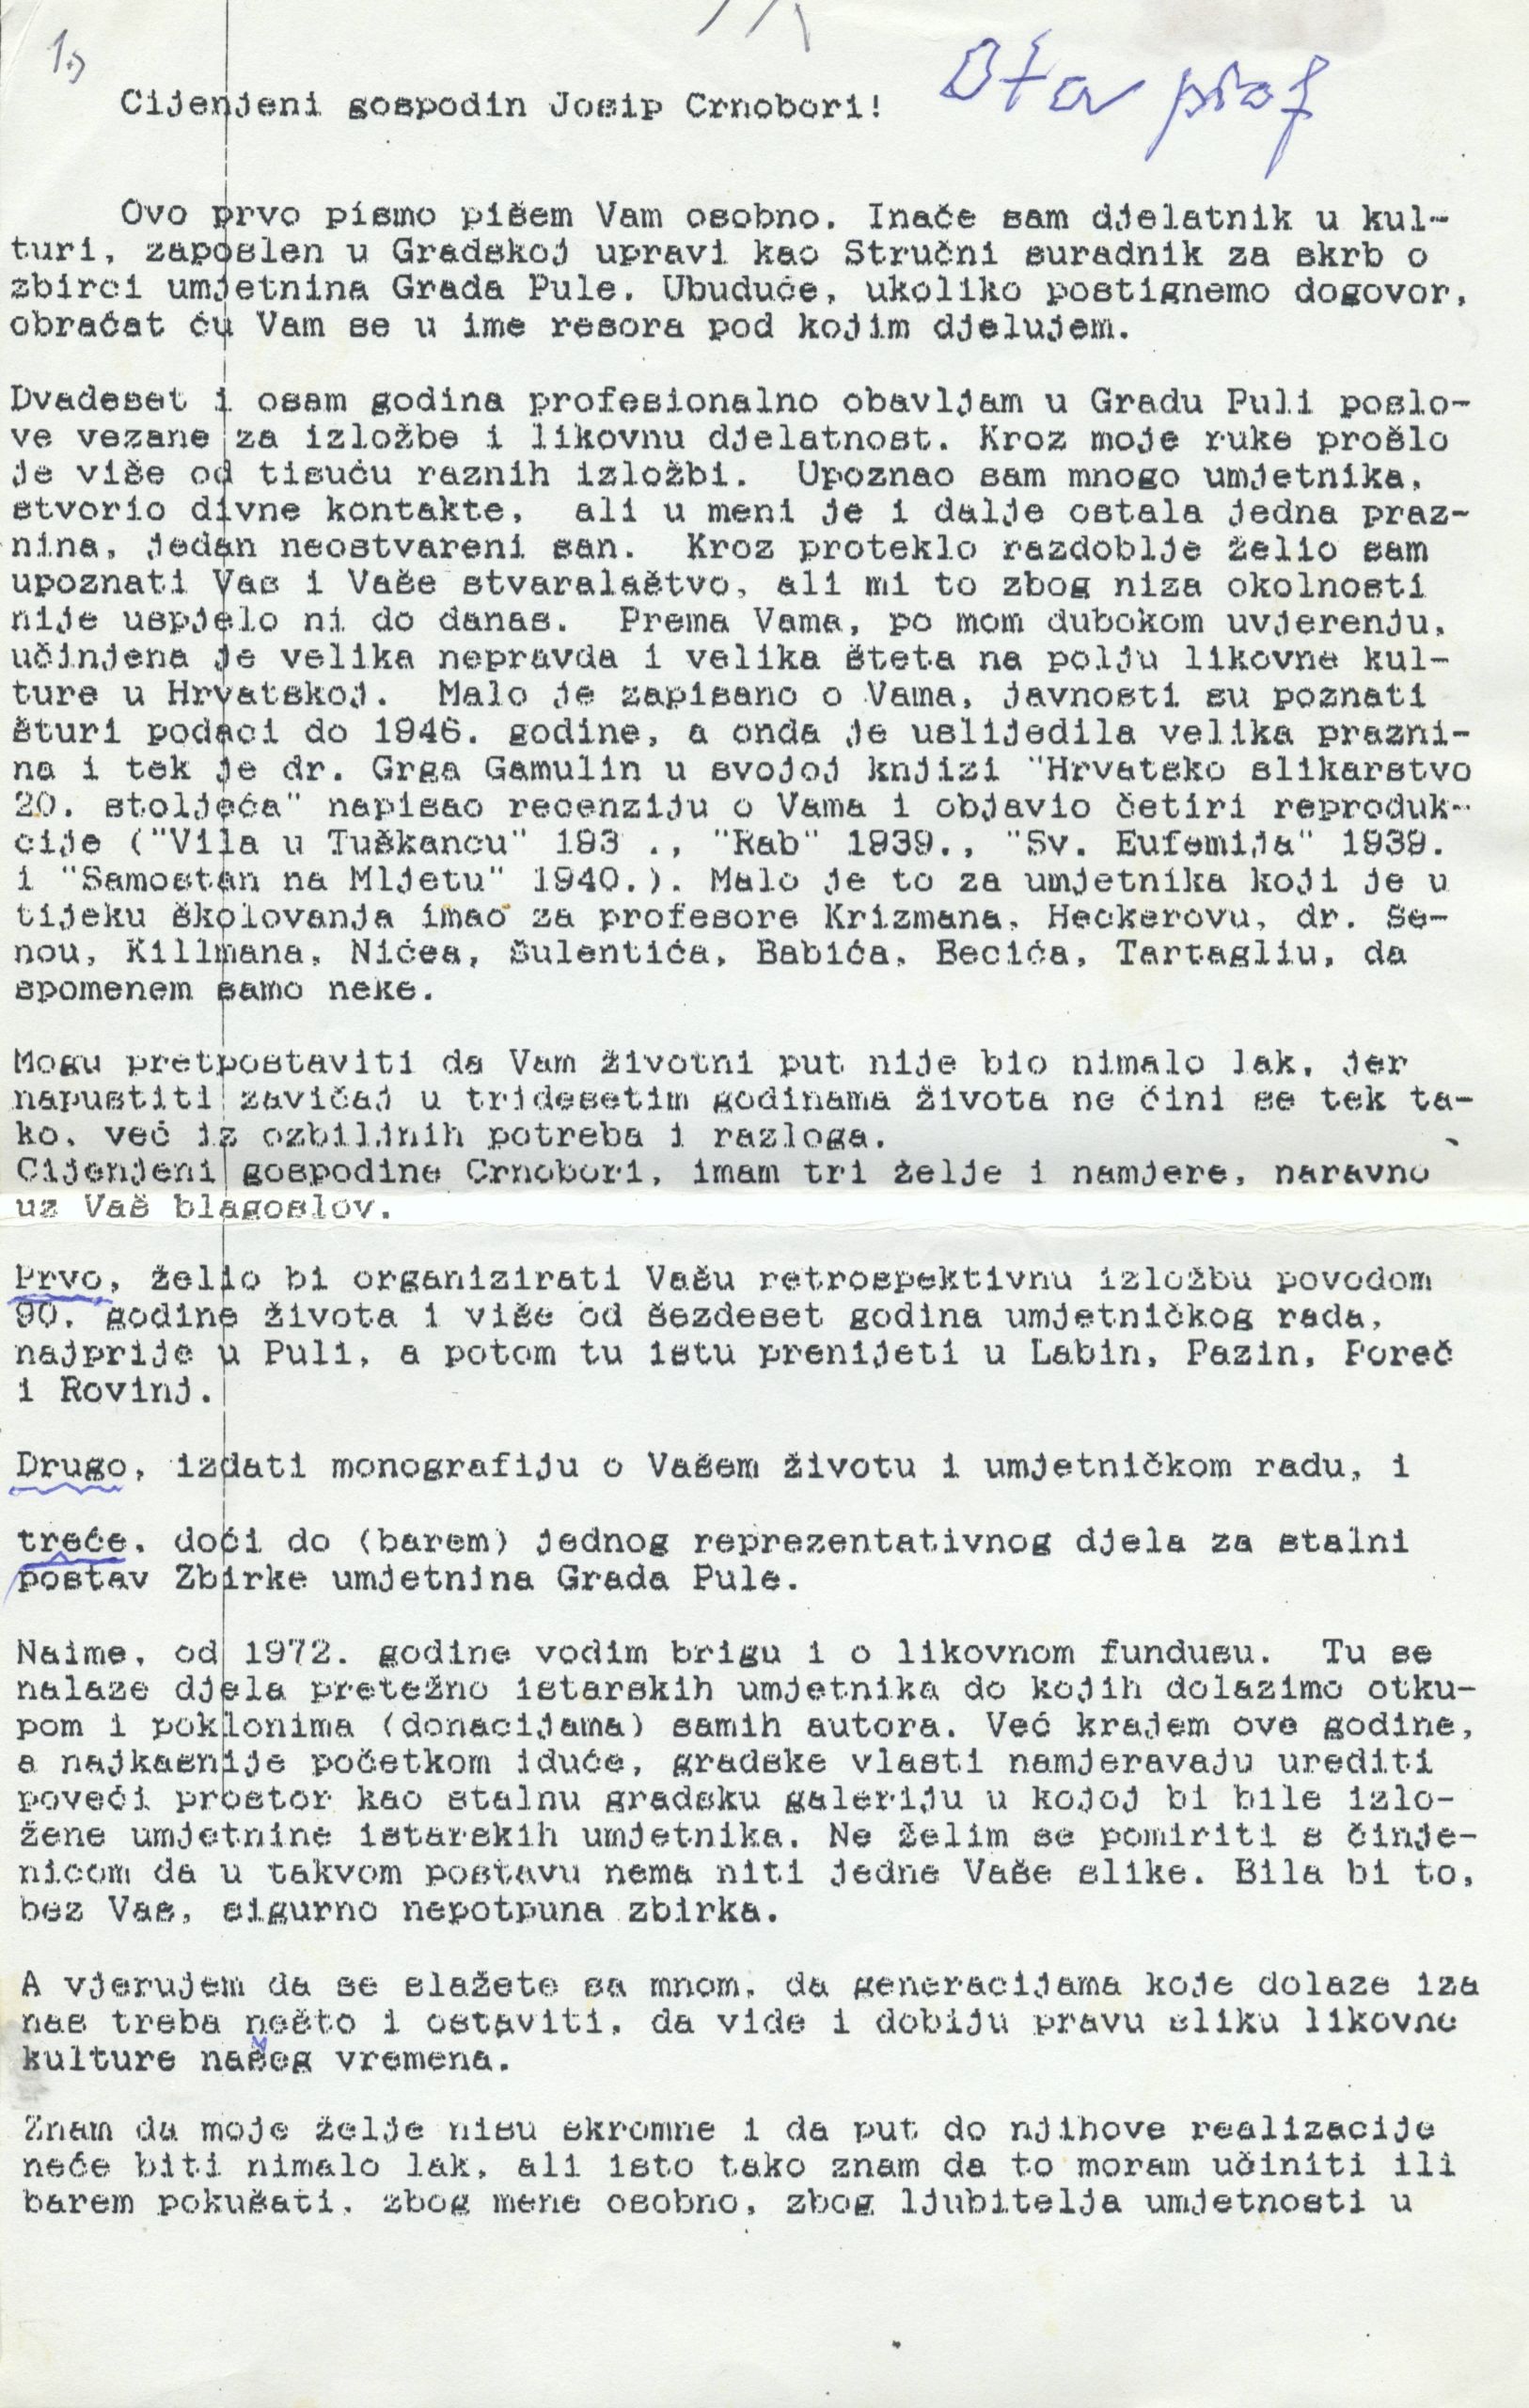 Fragment prvog pisma Ota Šireca Josipu Crnoboriju, 29. 4. 1997.